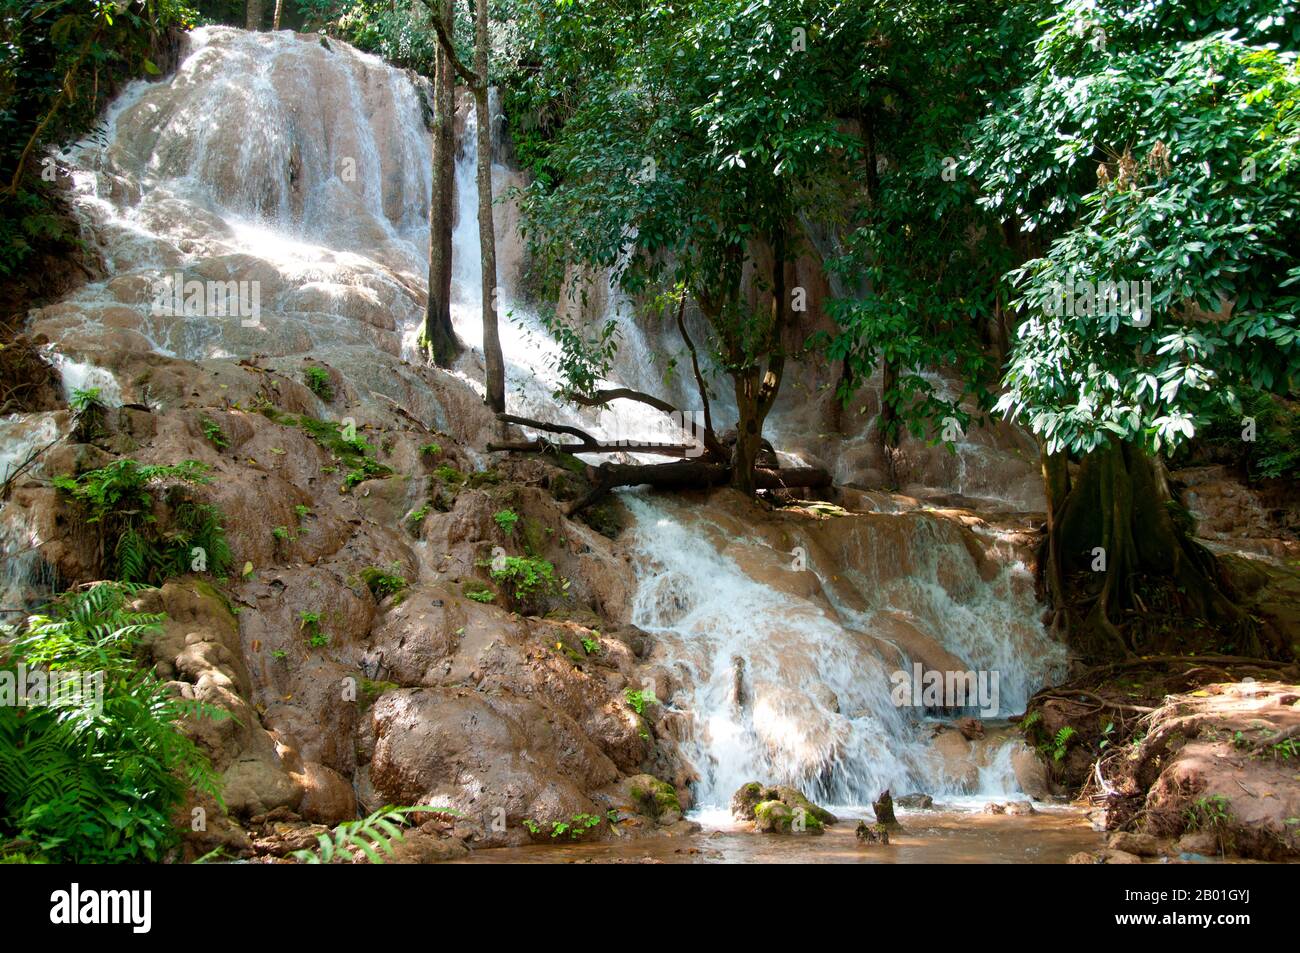 Thaïlande : chute d'eau de Phiang DIN près de Suan Hin Pha Ngam, province de Loei. La province de Loei (thaï : เลย) est située dans le nord-est de la Thaïlande. Les provinces voisines sont (de l'est dans le sens des aiguilles d'une montre) Nong Khai, Udon Thani, Nongbua Lamphu, Khon Kaen, Phetchabun, Phitsanulok. Au nord, il borde les provinces de Xaignabouli et Vientiane du Laos.. La province est couverte de basses montagnes, tandis que la capitale Loei est située dans un bassin fertile. La rivière Loei, qui traverse la province, est un affluent du Mékong. Banque D'Images